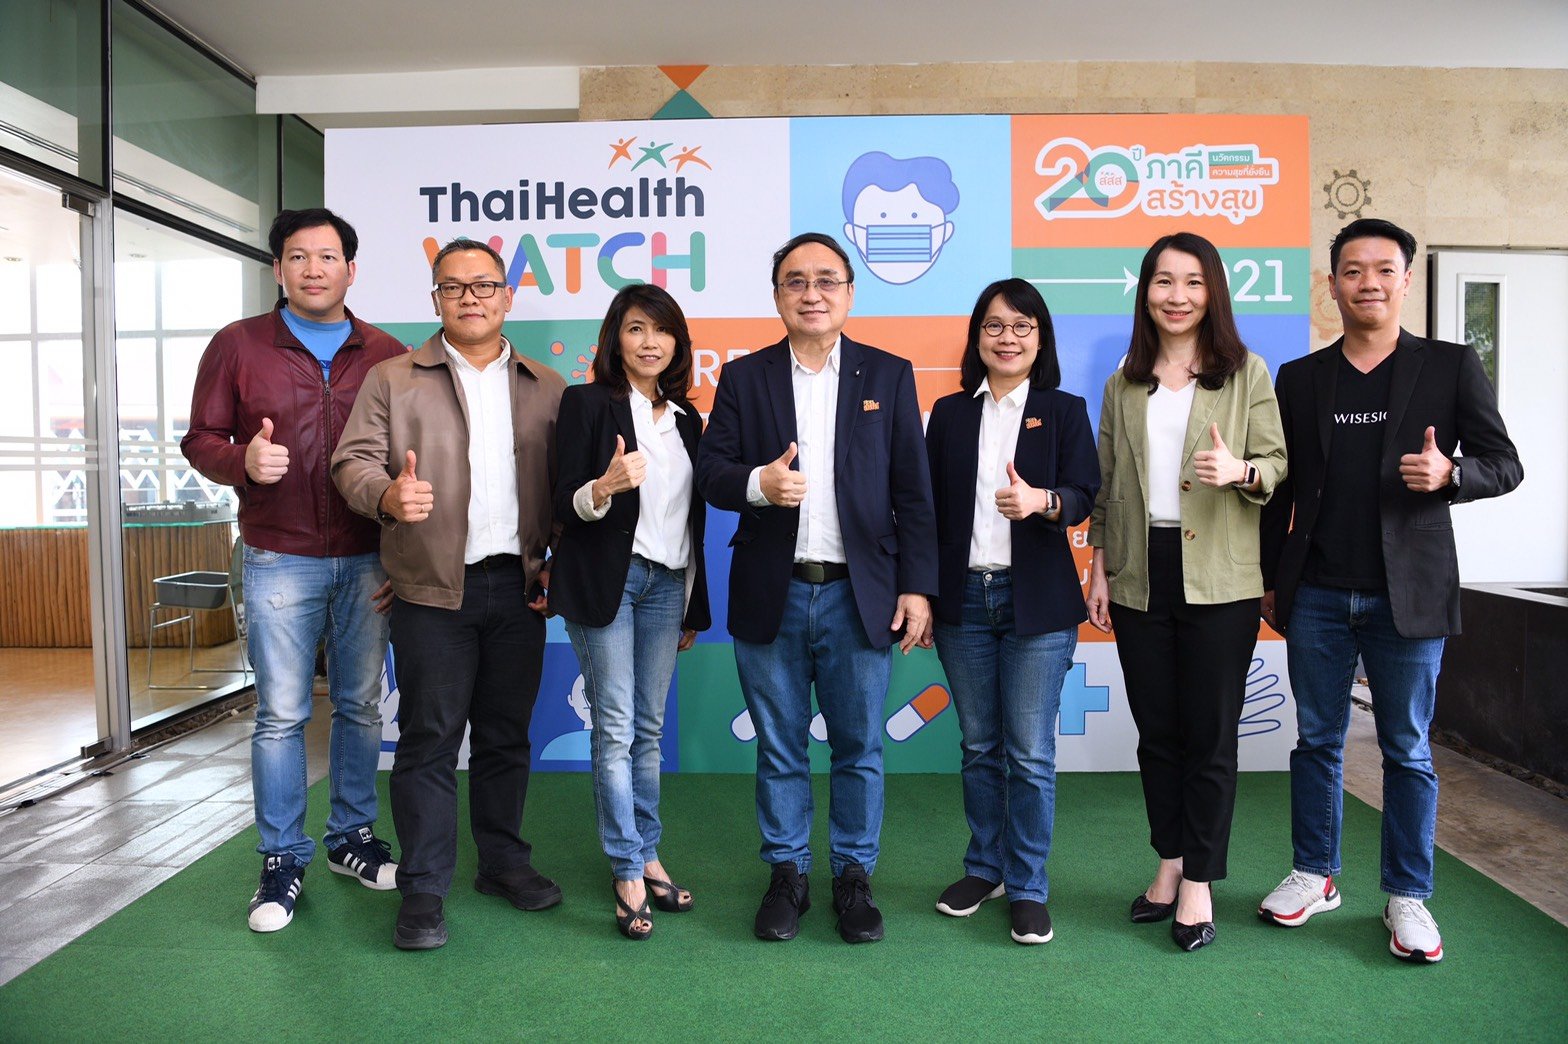 สสส.เจาะลึกทิศทางสุขภาพคนไทย ปี 2564 thaihealth